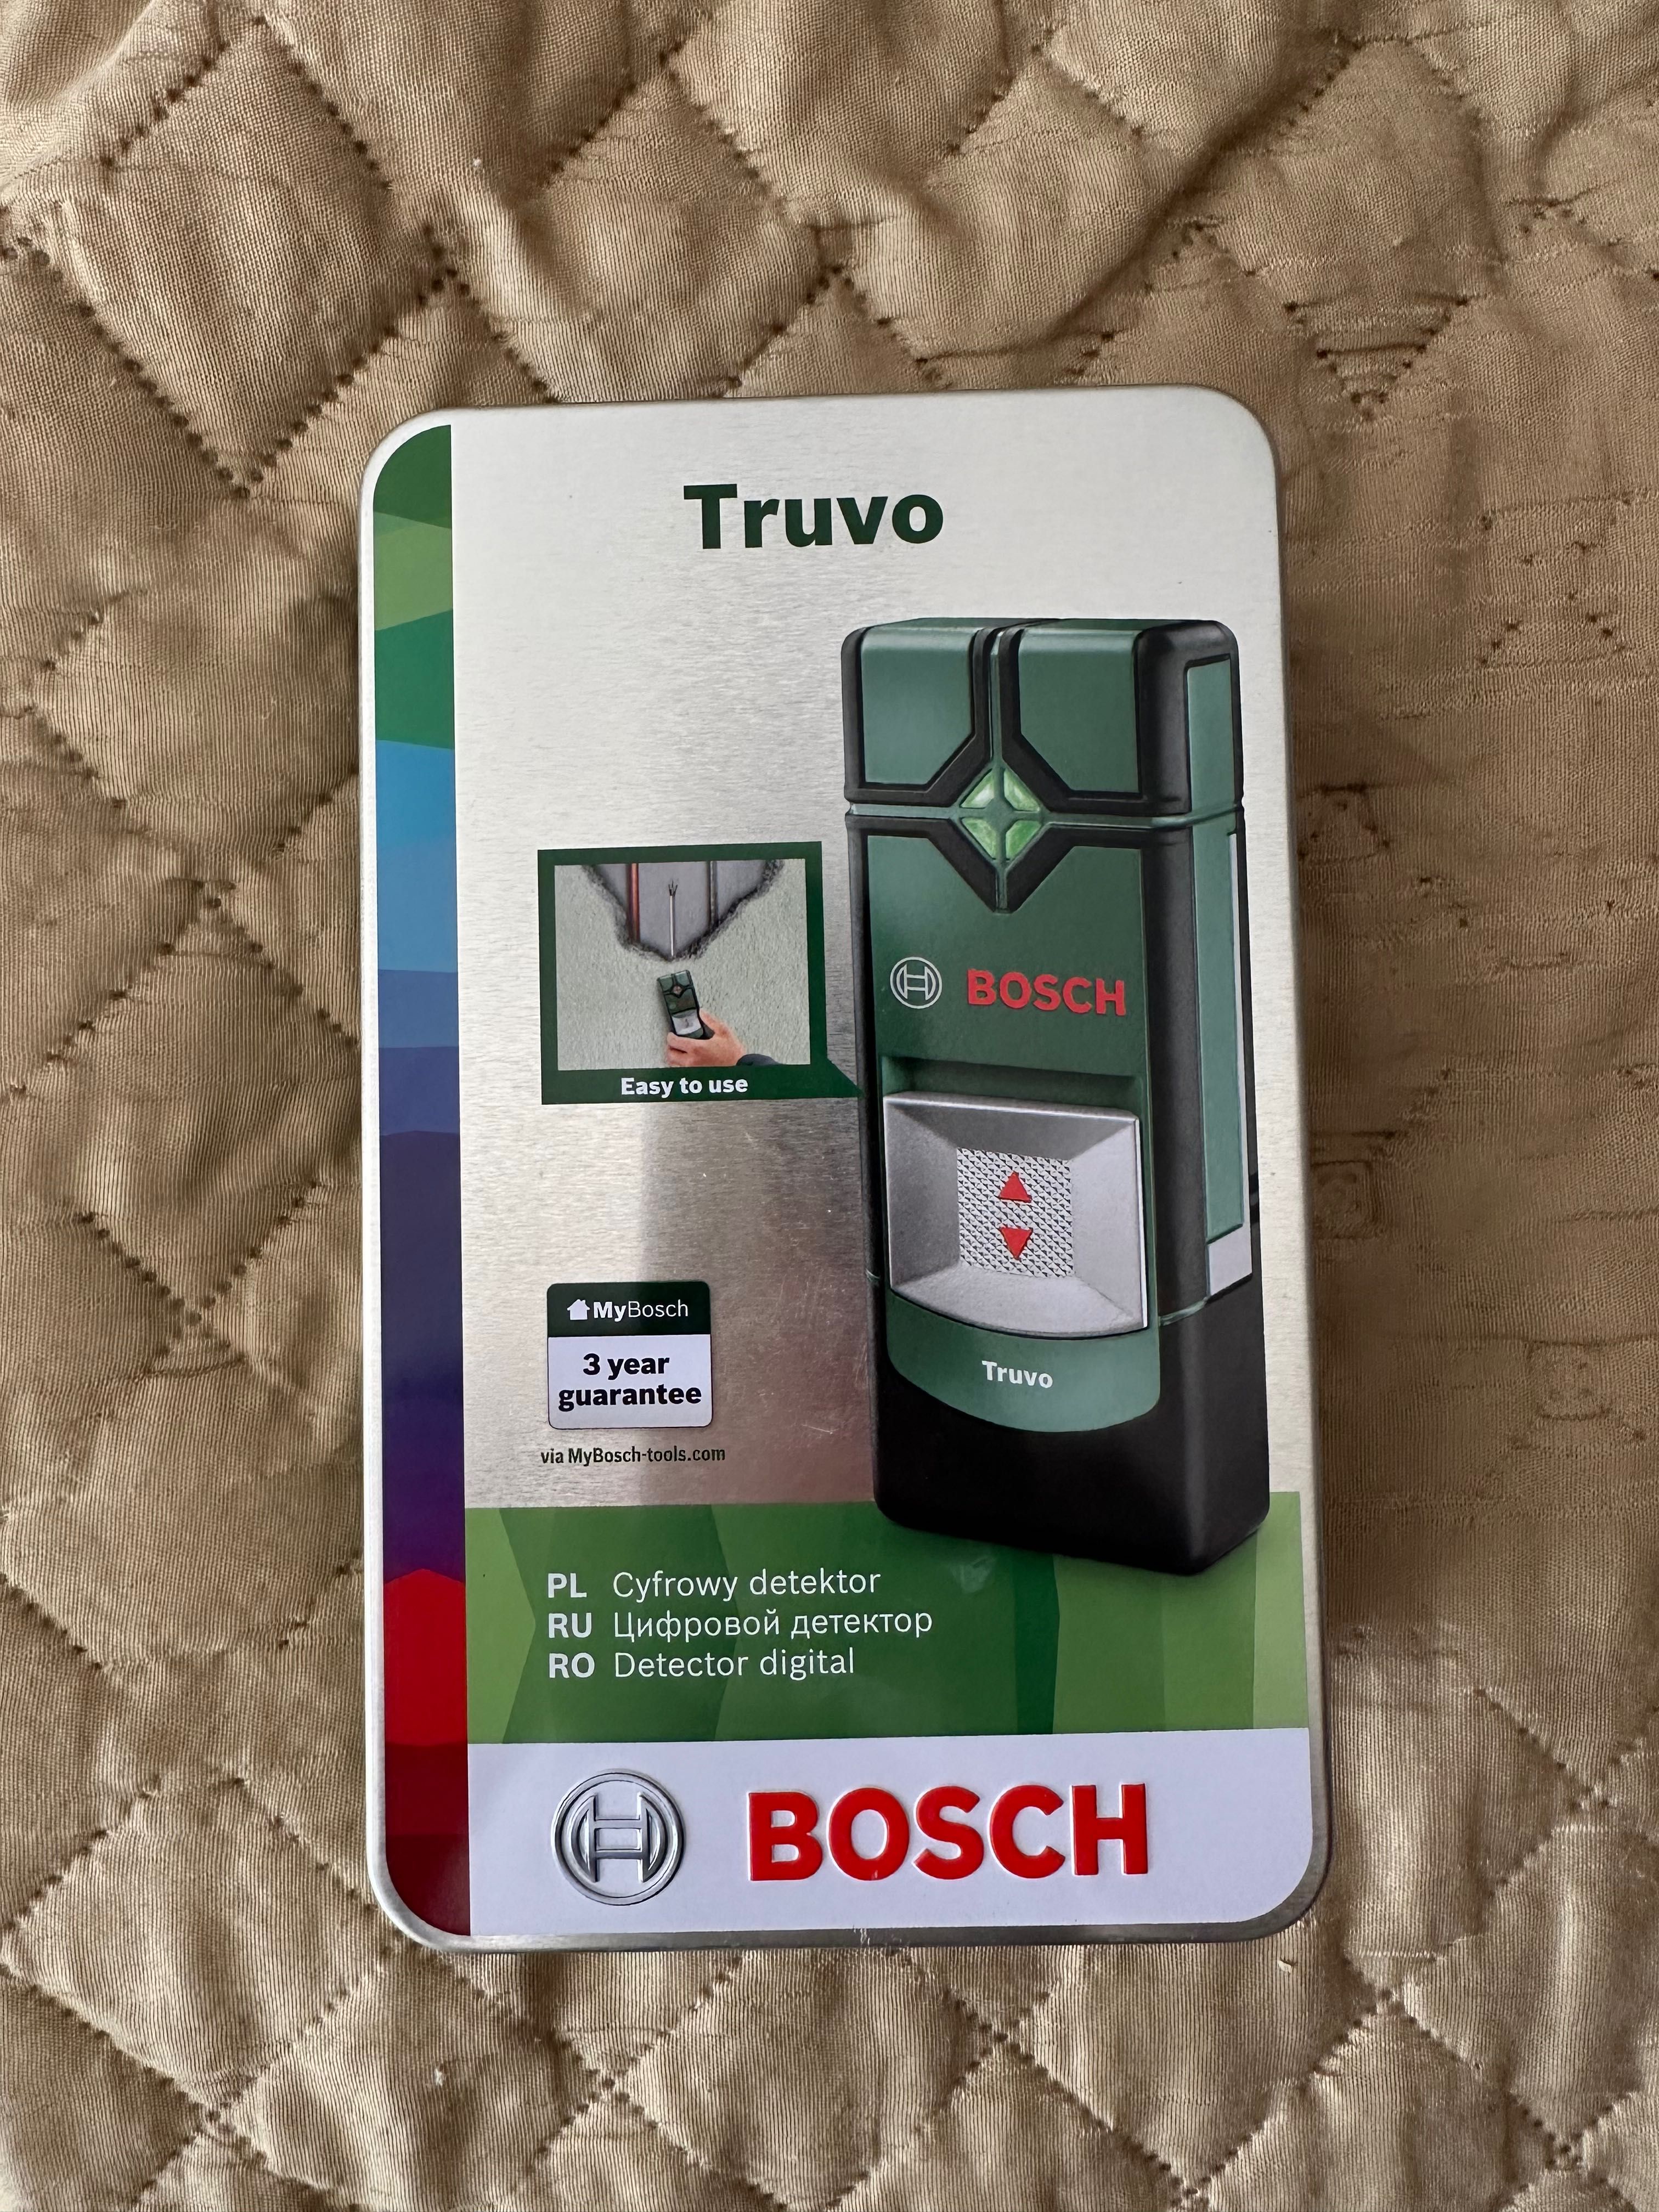 Bosch cyfrowy detektor trunov